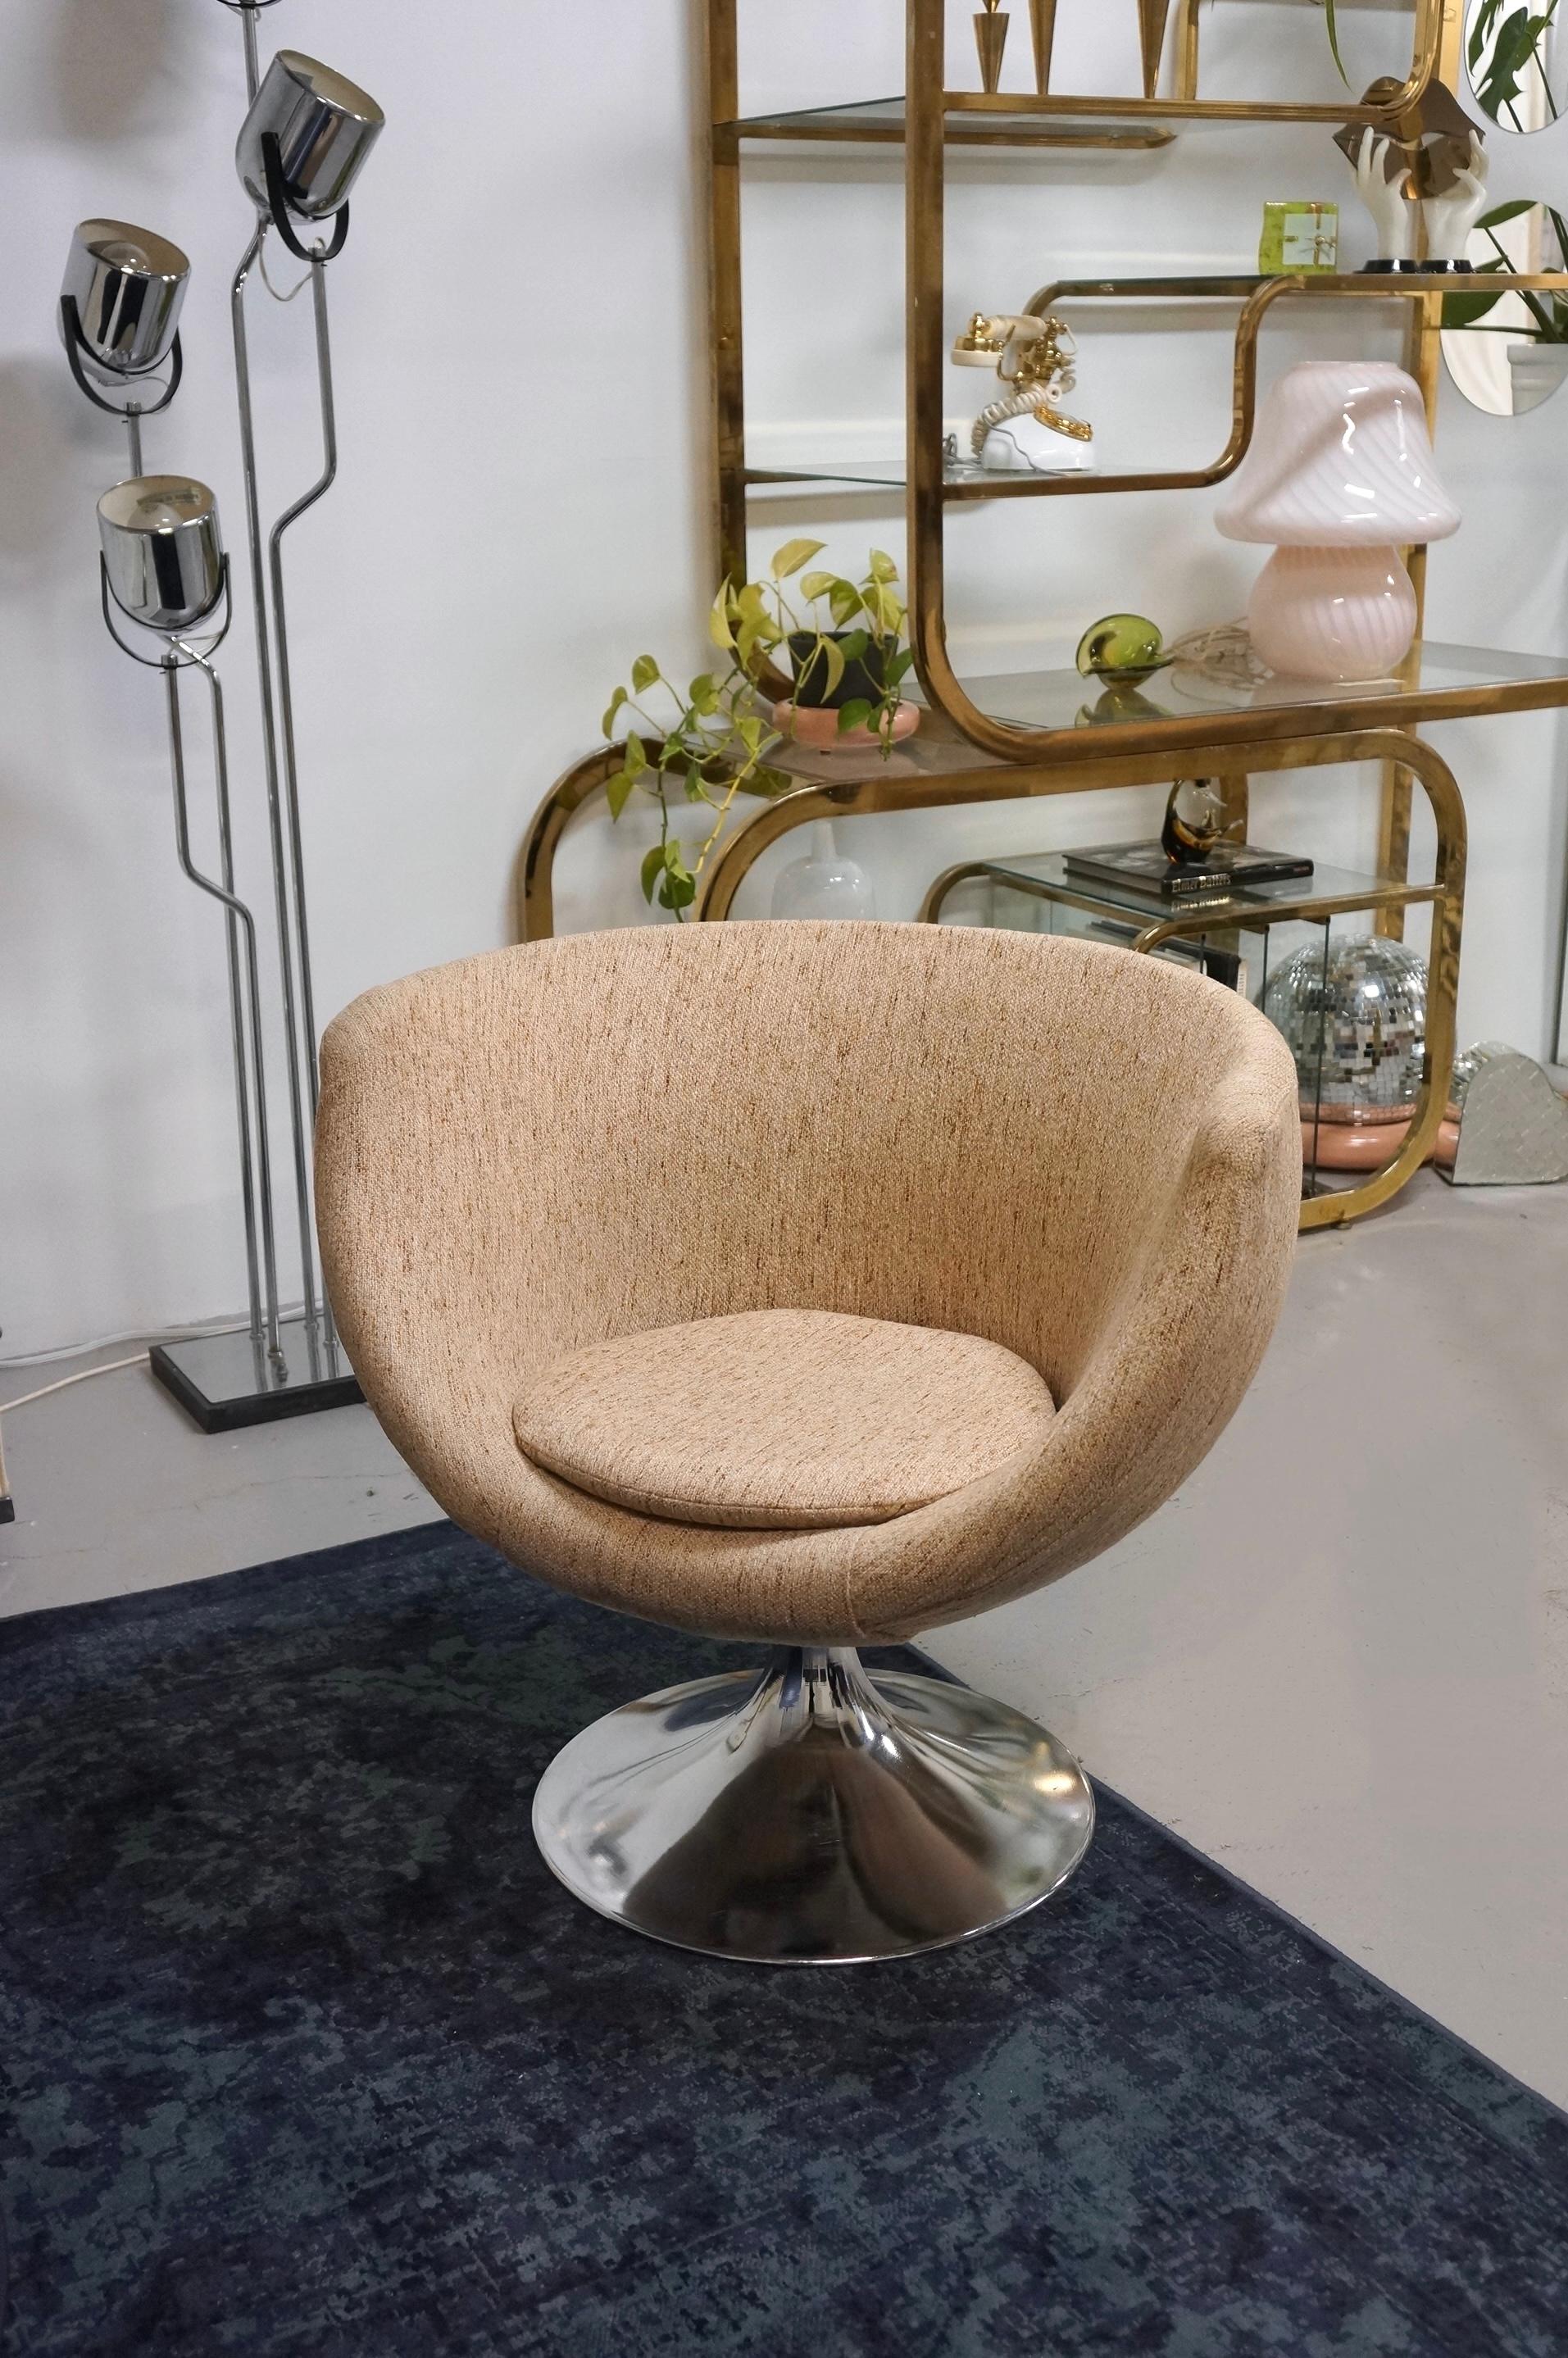 Un superbe fauteuil pivotant pod en tissu tweed et base chromée. Cette chaise longue spectaculaire est attribuée à Overman et a été fabriquée dans les années 1960. Le tissu est en tweed et dans des tons chauds et neutres. La base est en aluminium